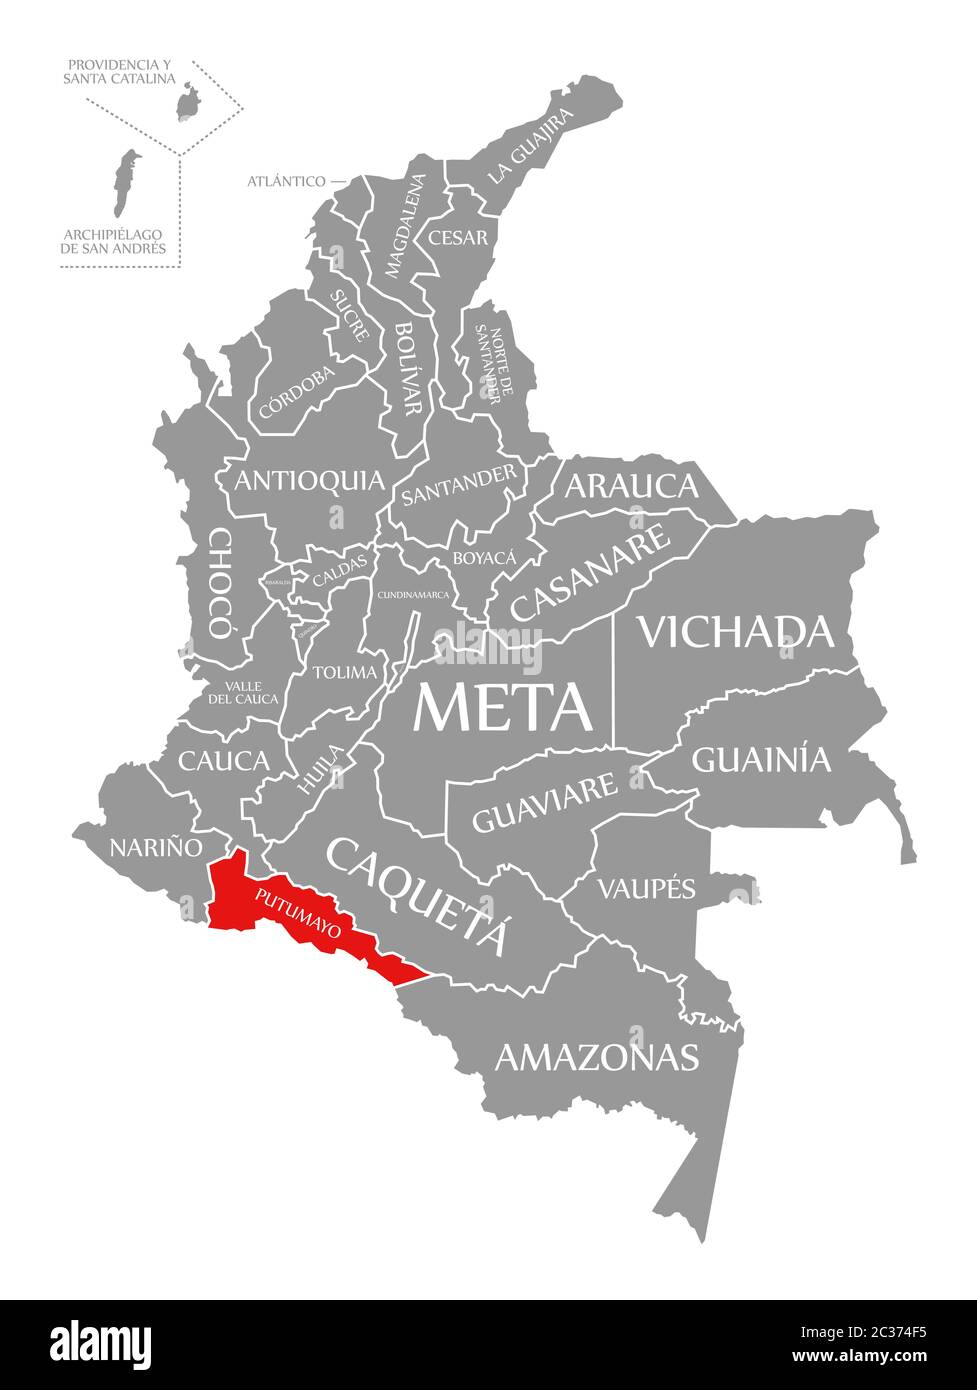 Putumayo evidenziata in rosso nella mappa della Colombia Foto Stock